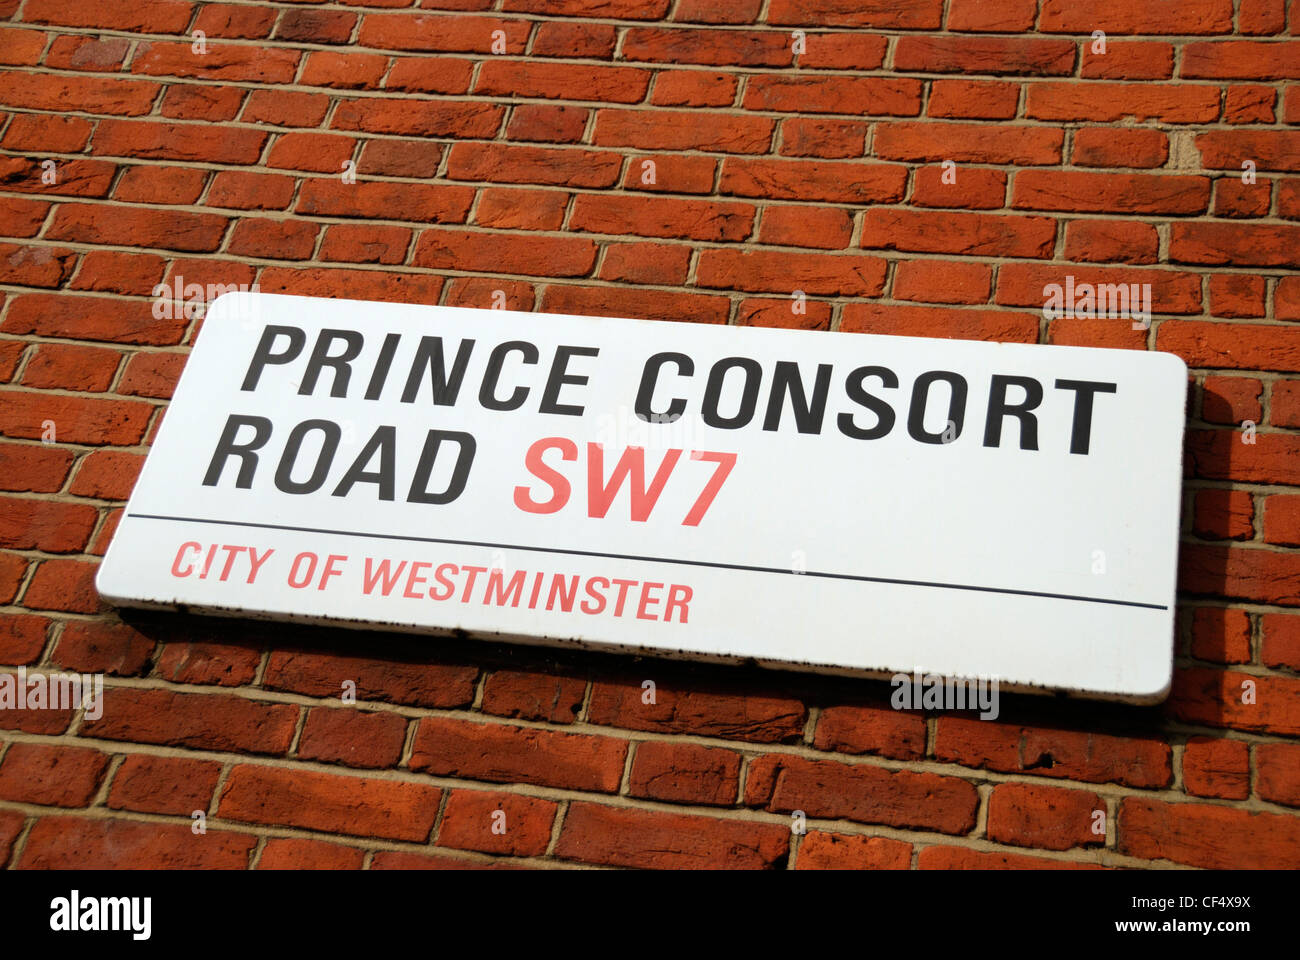 Prince Consort Road SW7, City of westminster street signe sur un mur. Banque D'Images